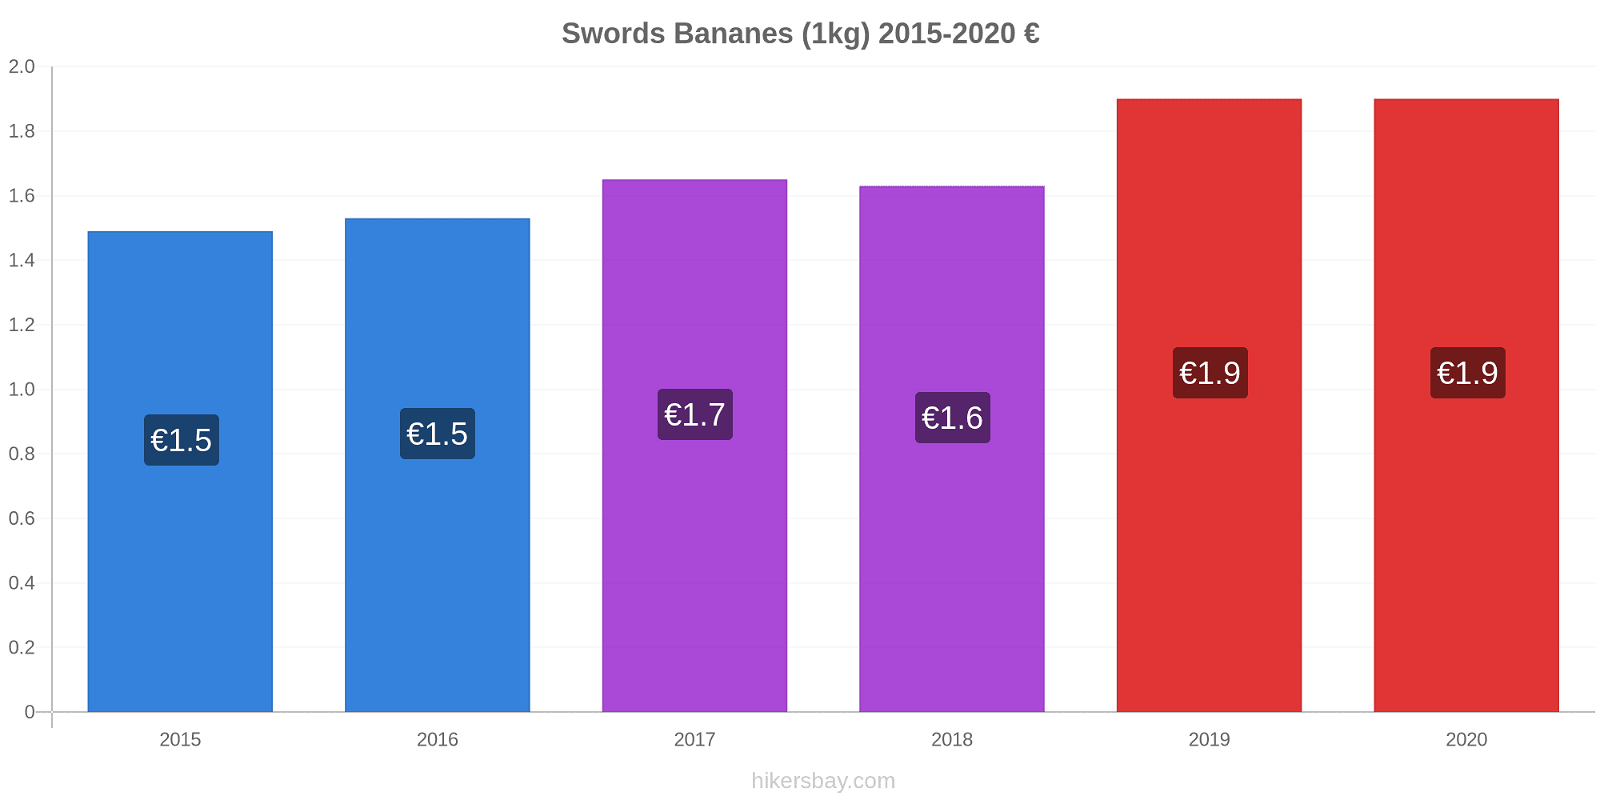 Swords changements de prix Bananes (1kg) hikersbay.com